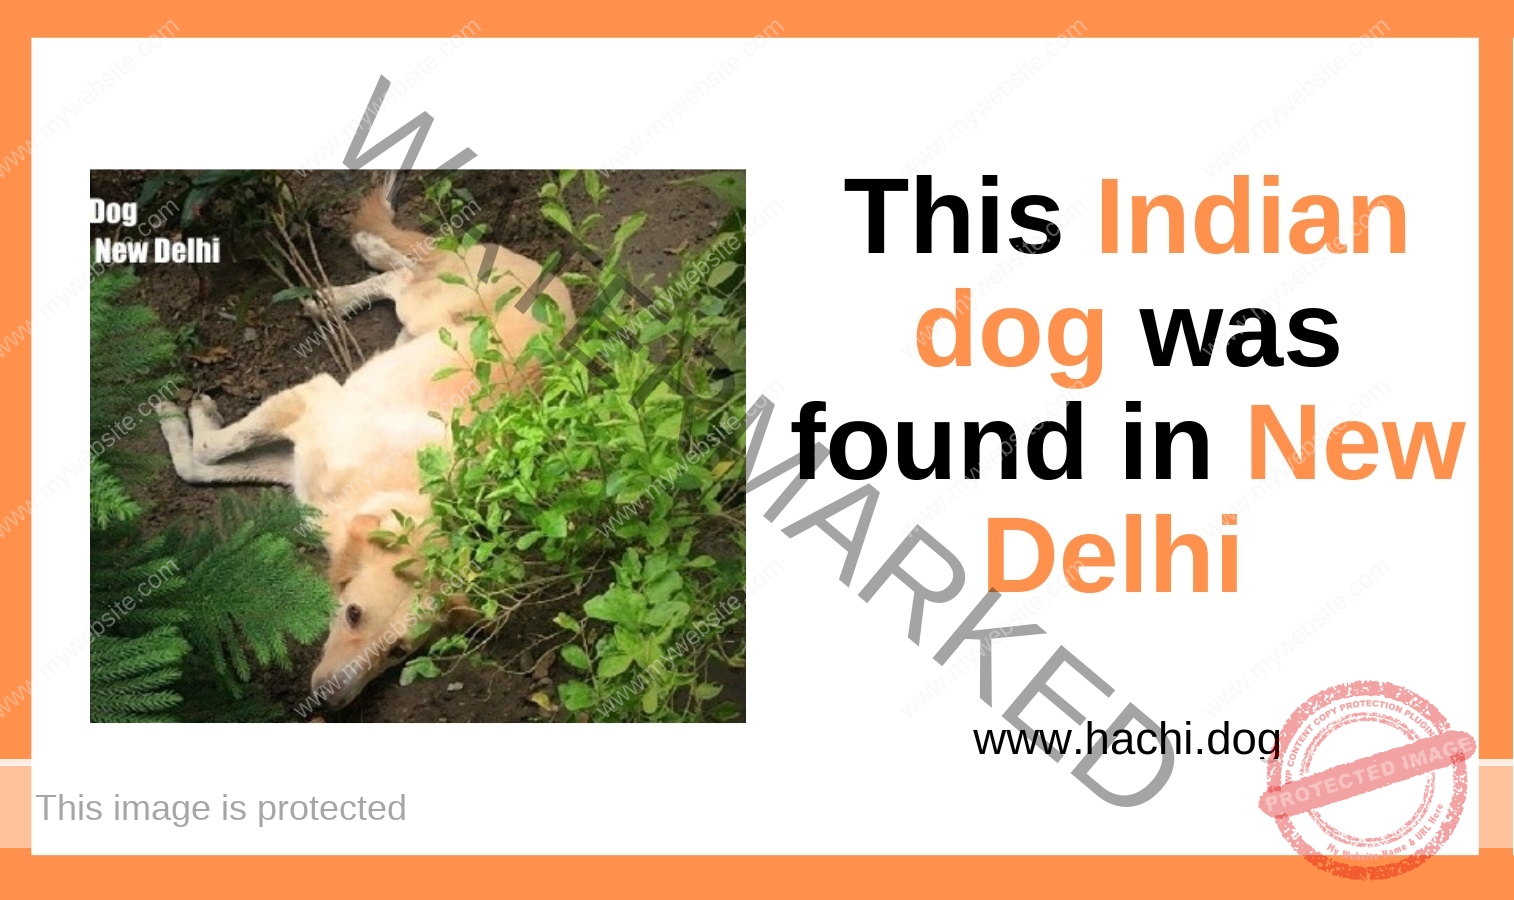 A Male Indian Dog Found in Dwarka, New Delhi